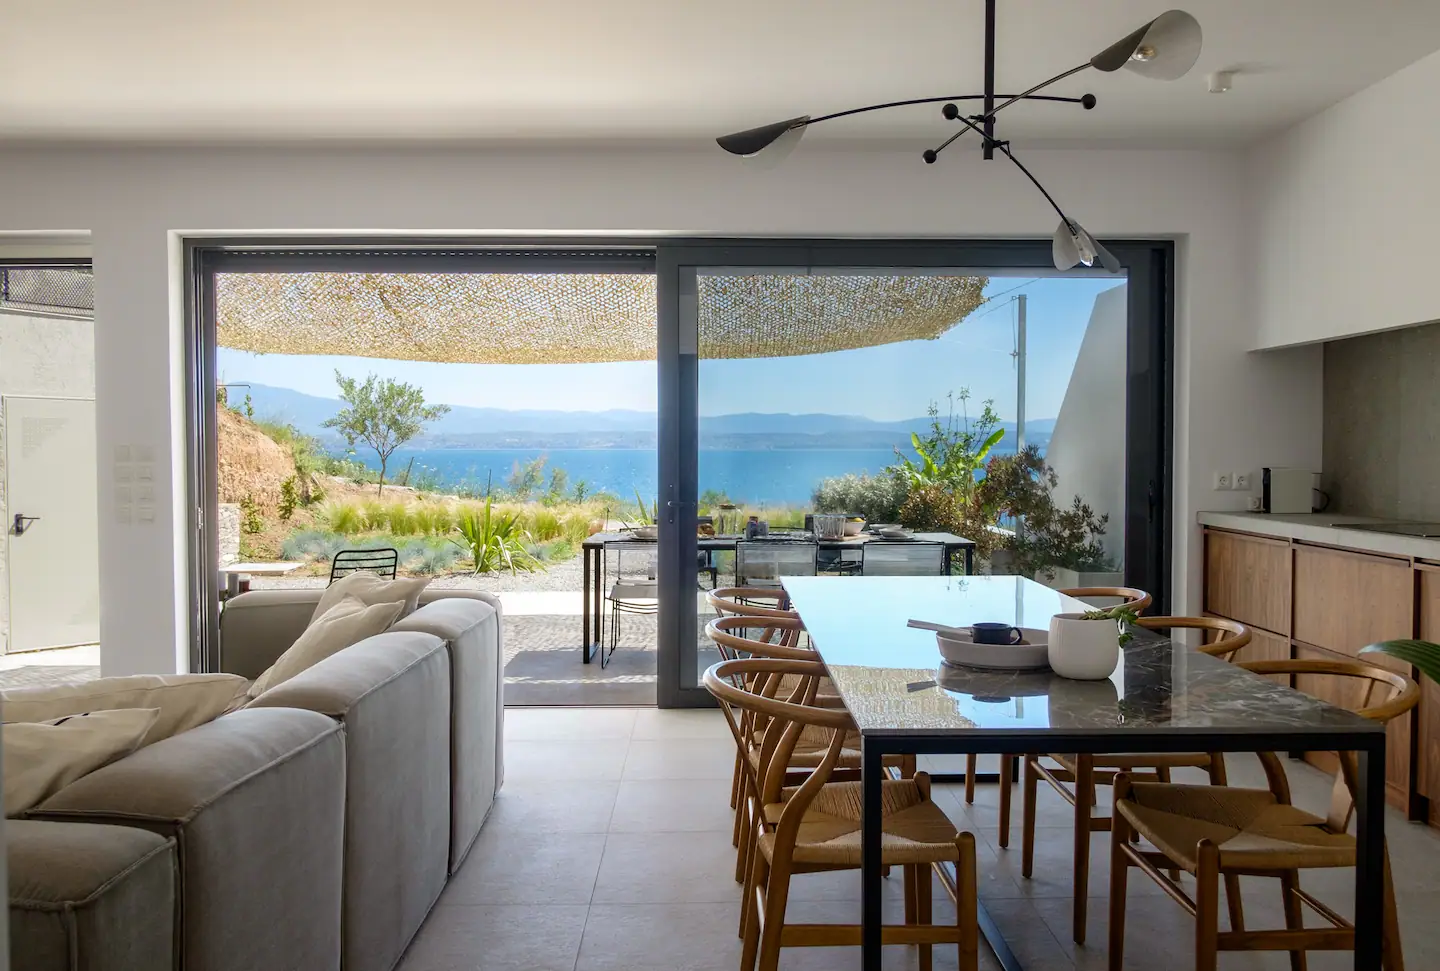 Σε κανένα νησί: Το πιο περιζήτητο ελληνικό σπίτι στην Airbnb βρίσκεται μιάμιση ώρα από την Αθήνα